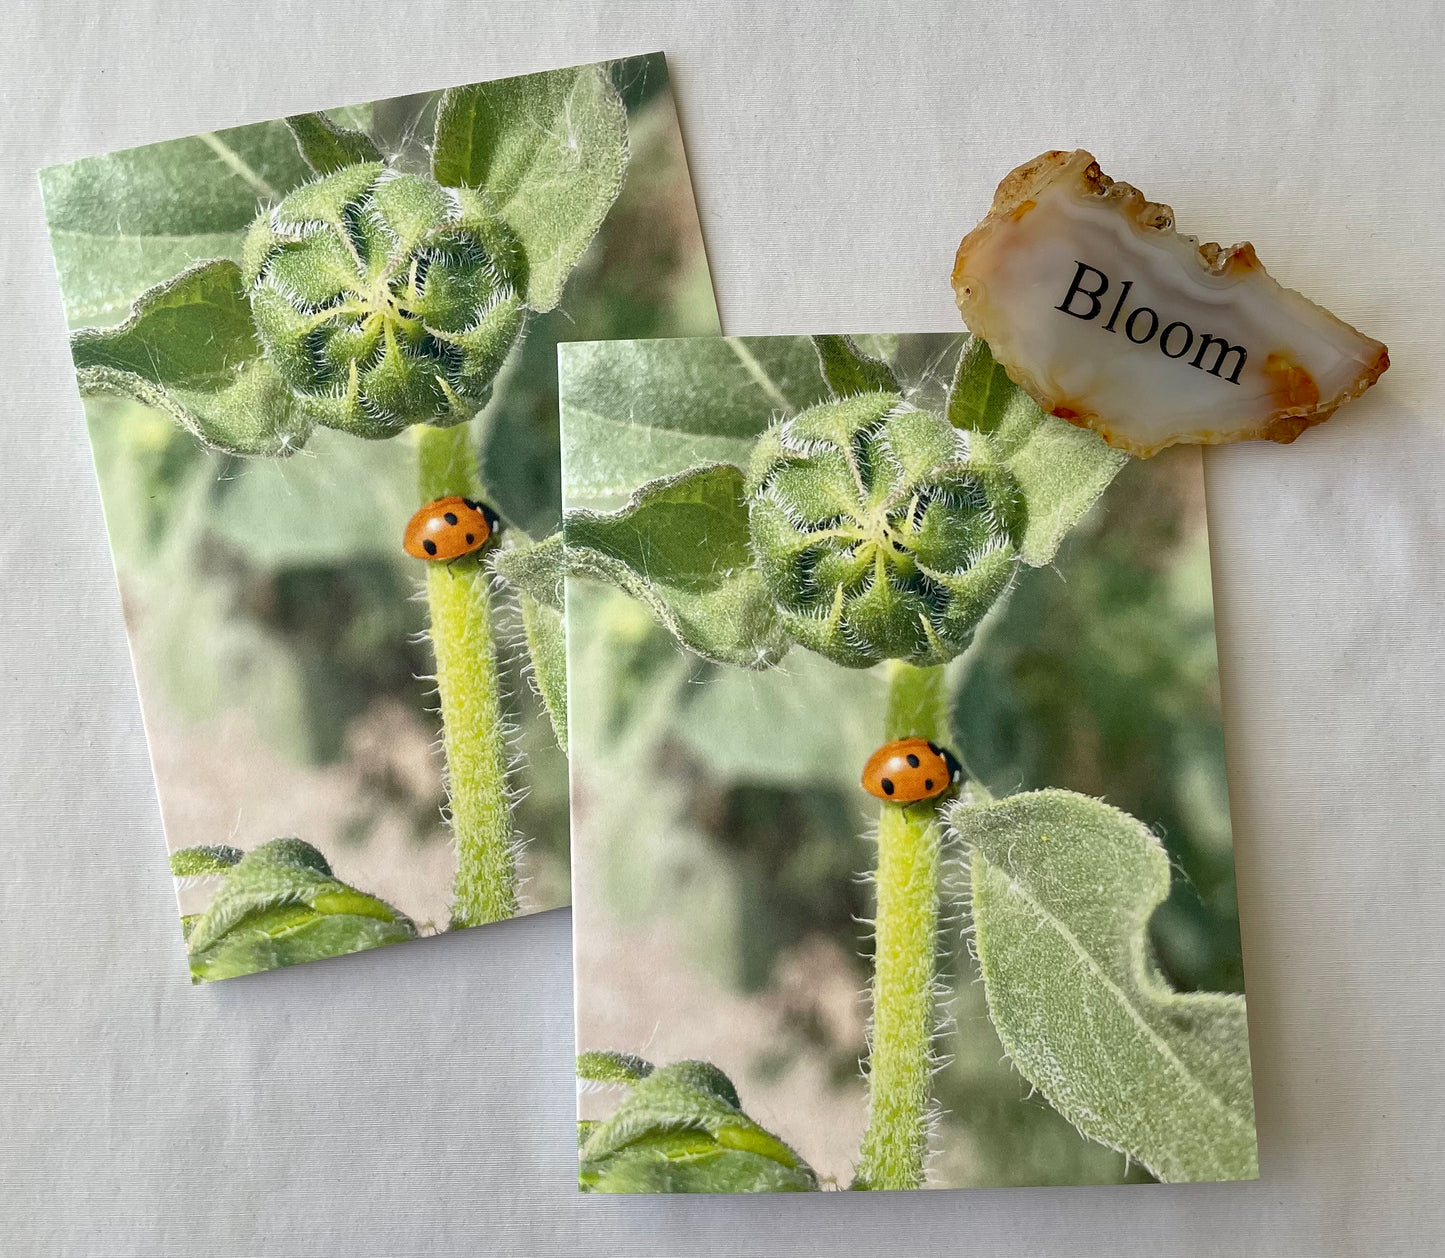 Ladybug on Stem of Sunflower Bud Nature Photography Single Greeting Card with Kraft Envelope